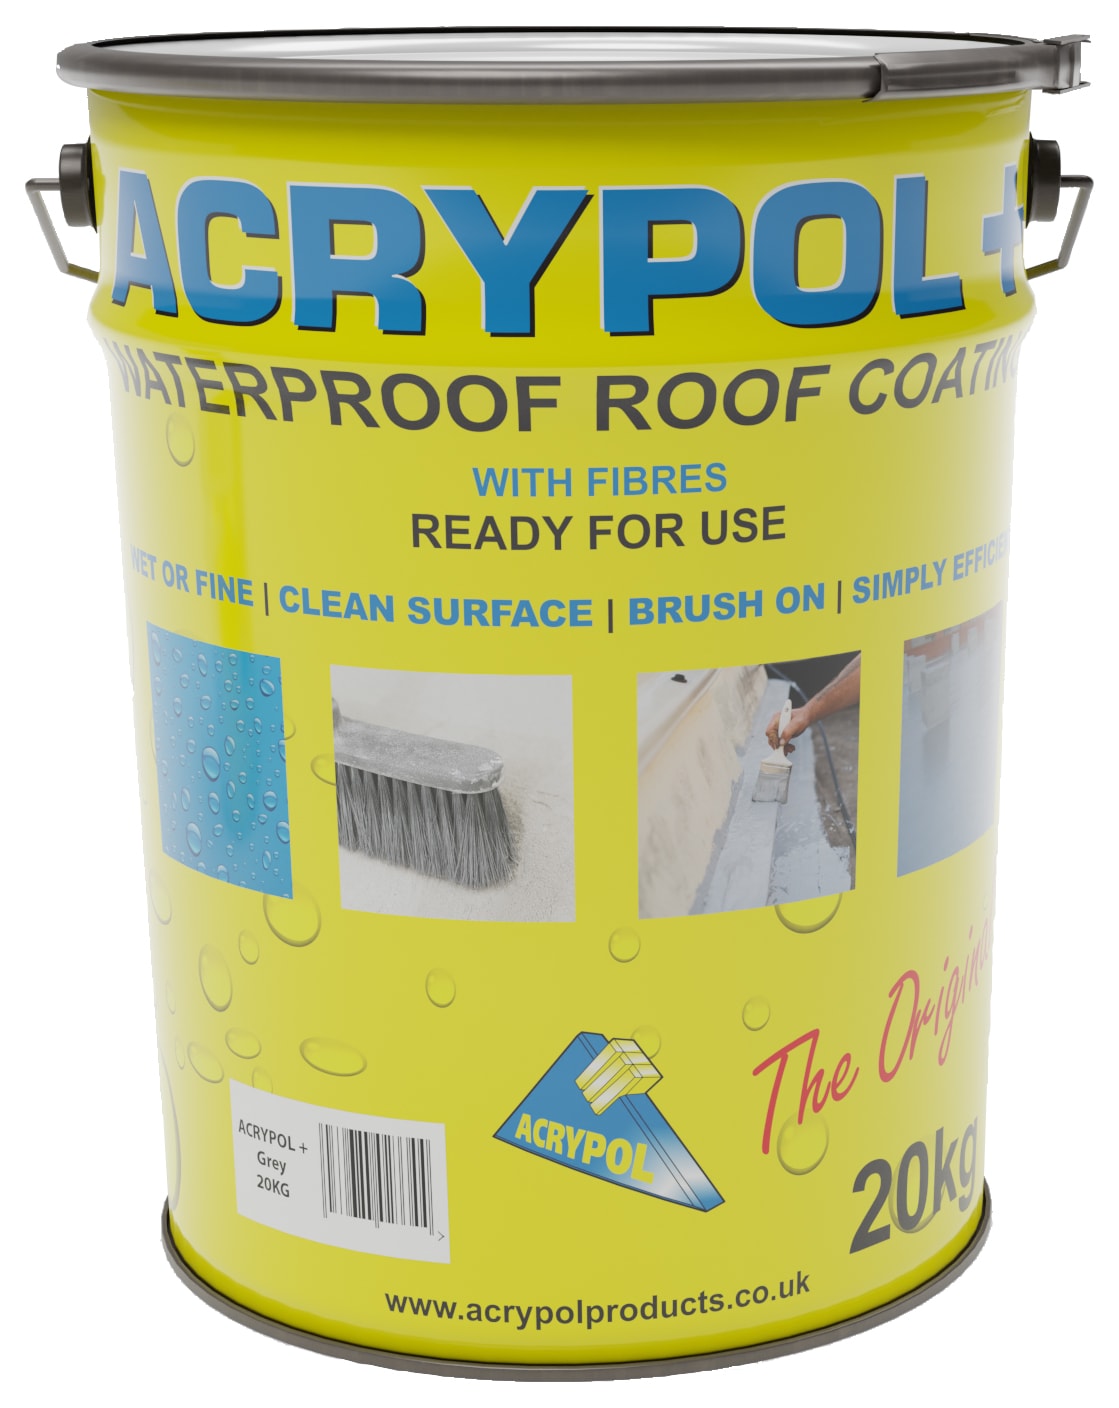 Acrypol+ Grey Waterproof Roof Coating - 20kg